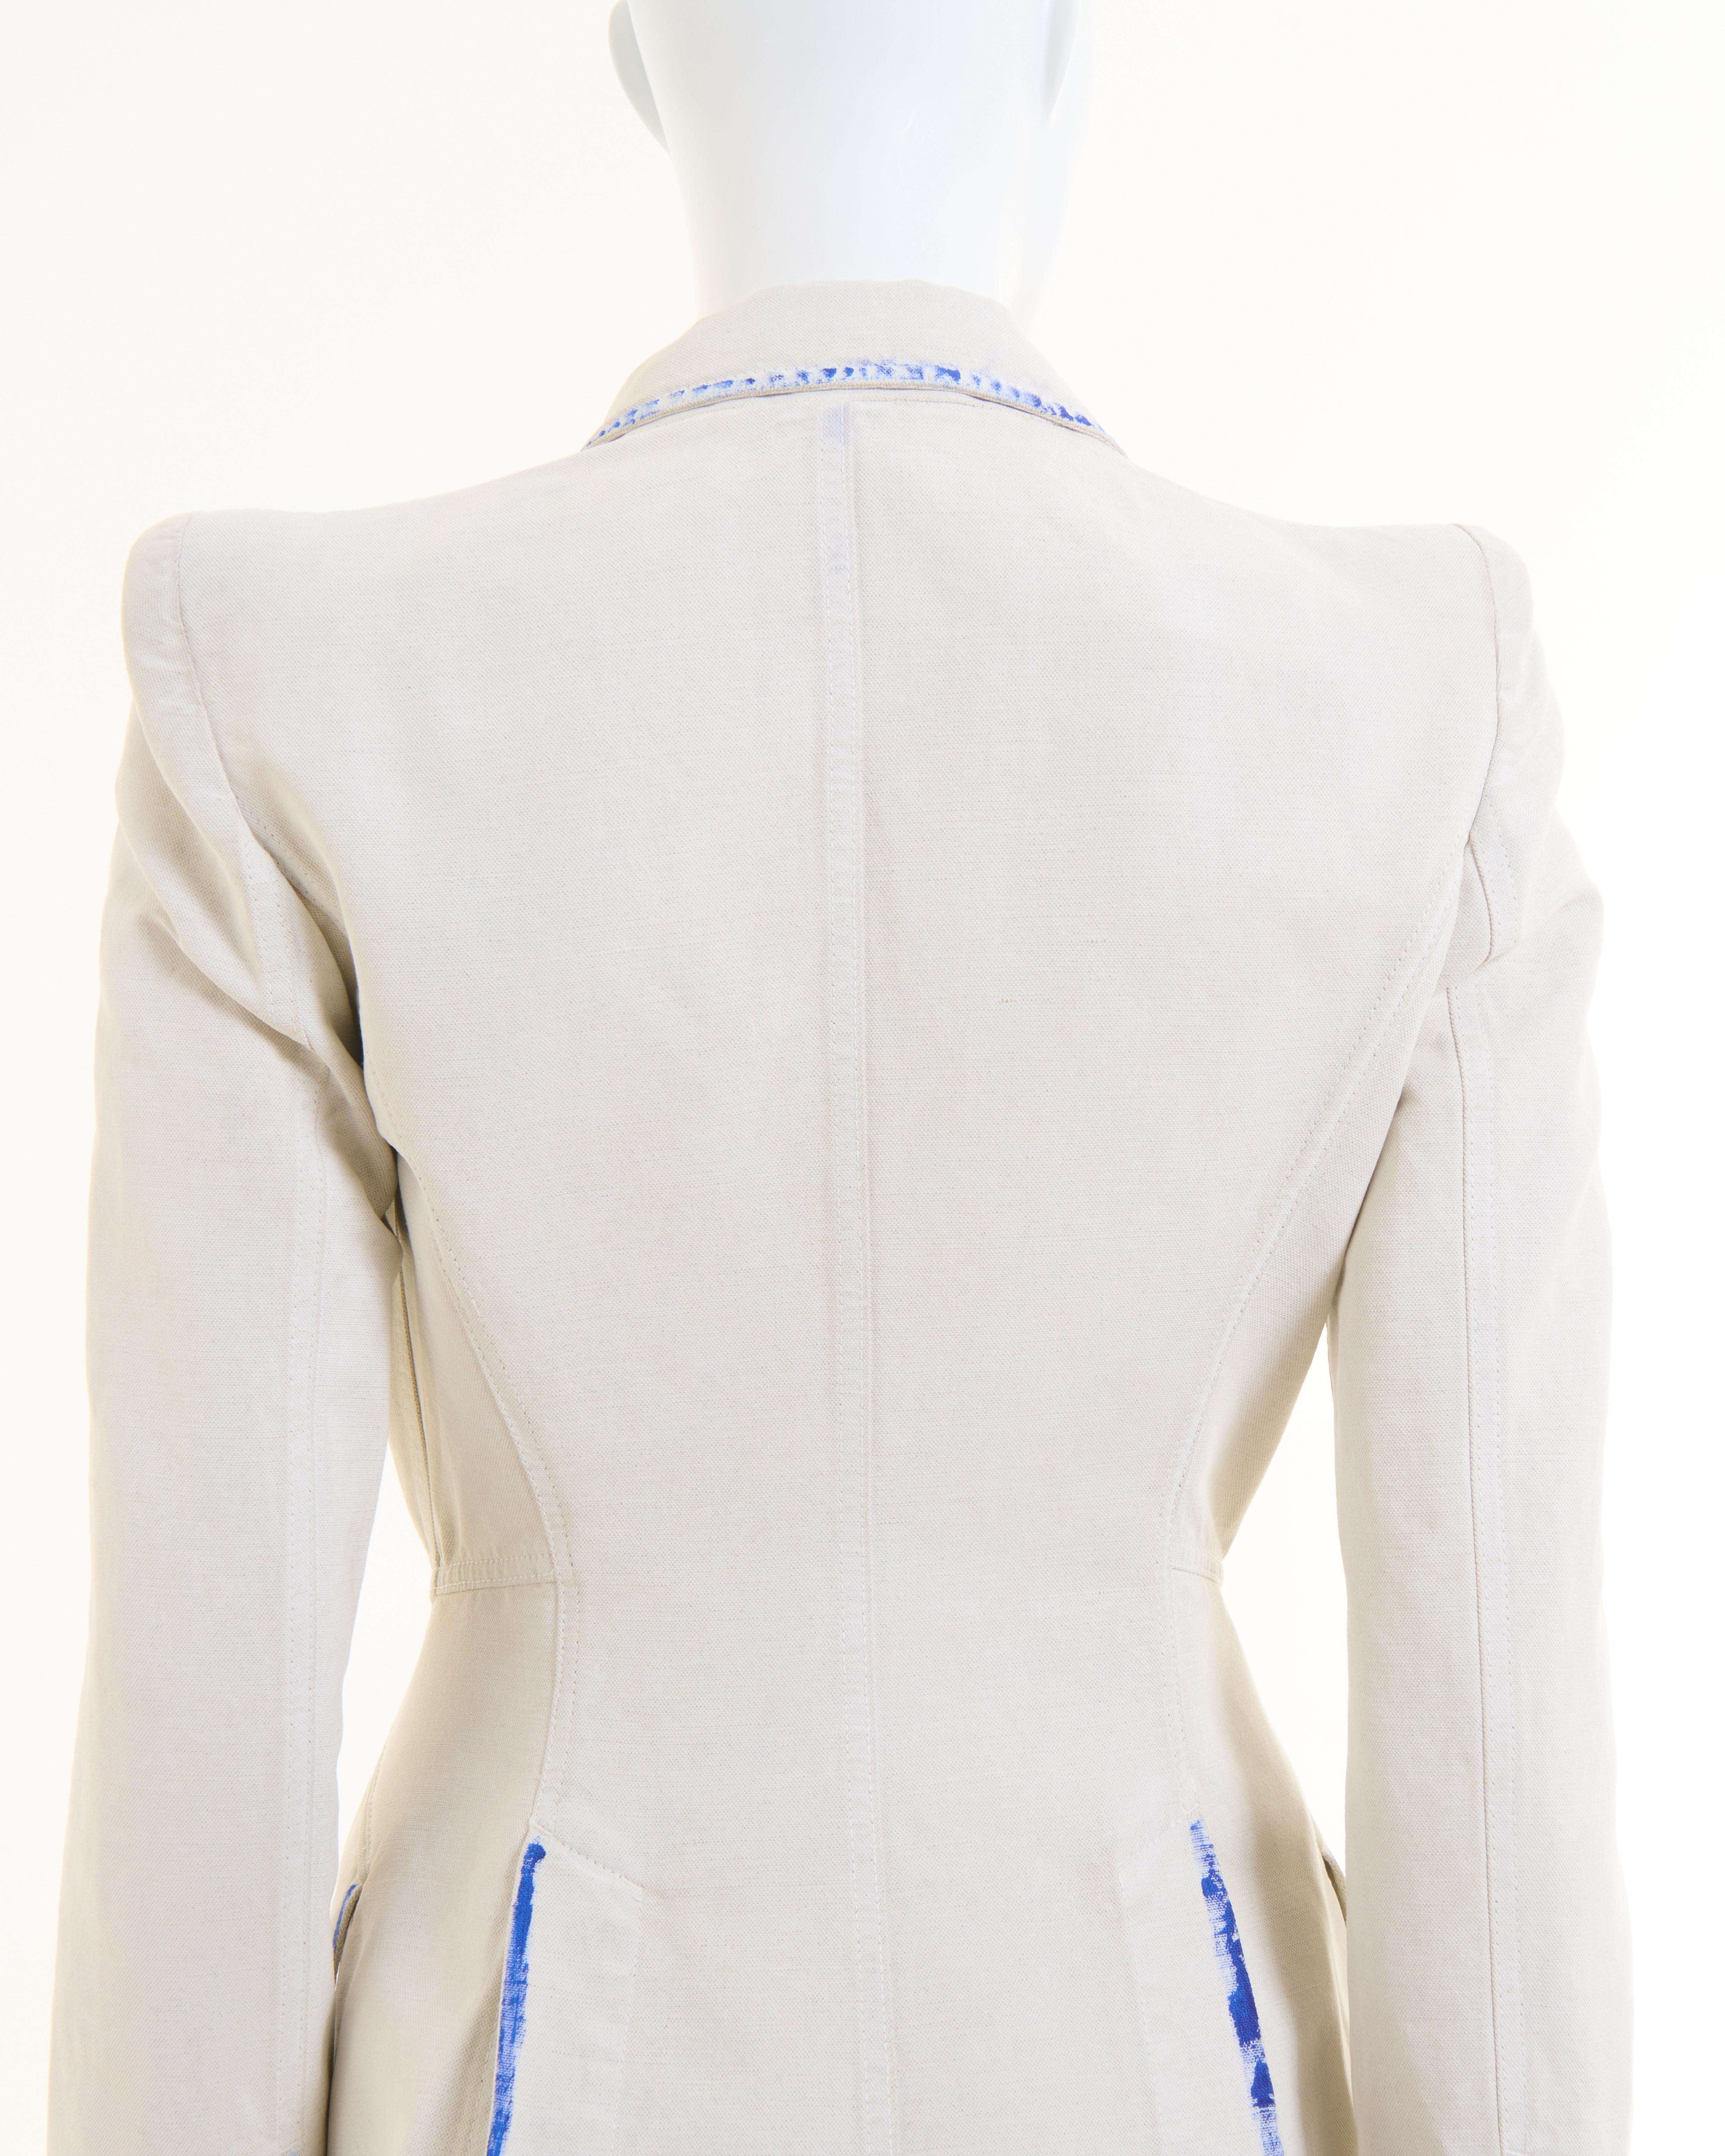 Alexander McQueen Resort 2010 White cotton canvas hand painted blazer jacket For Sale 5